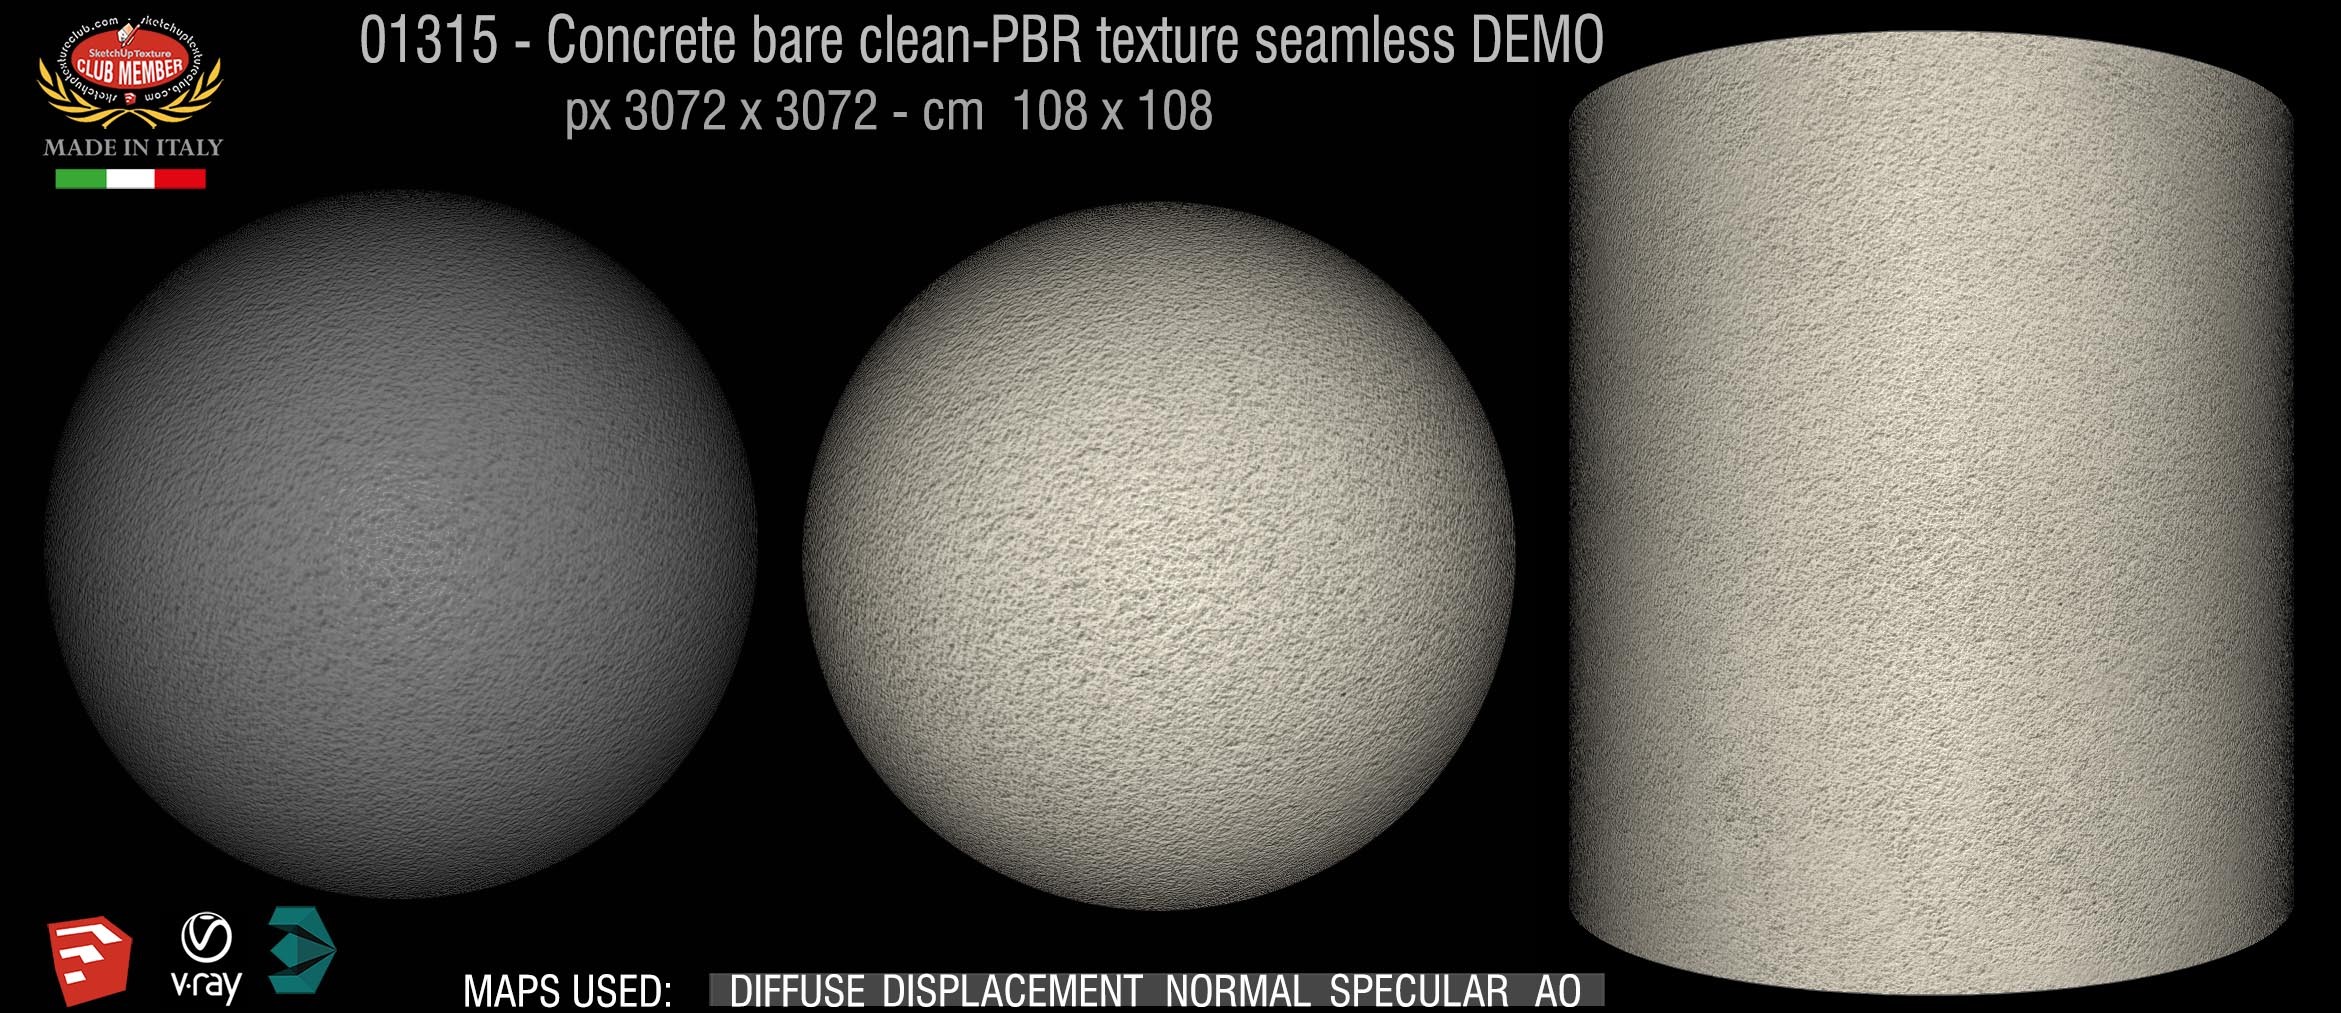 01315 Concrete bare clean-PBR texture seamless DEMO